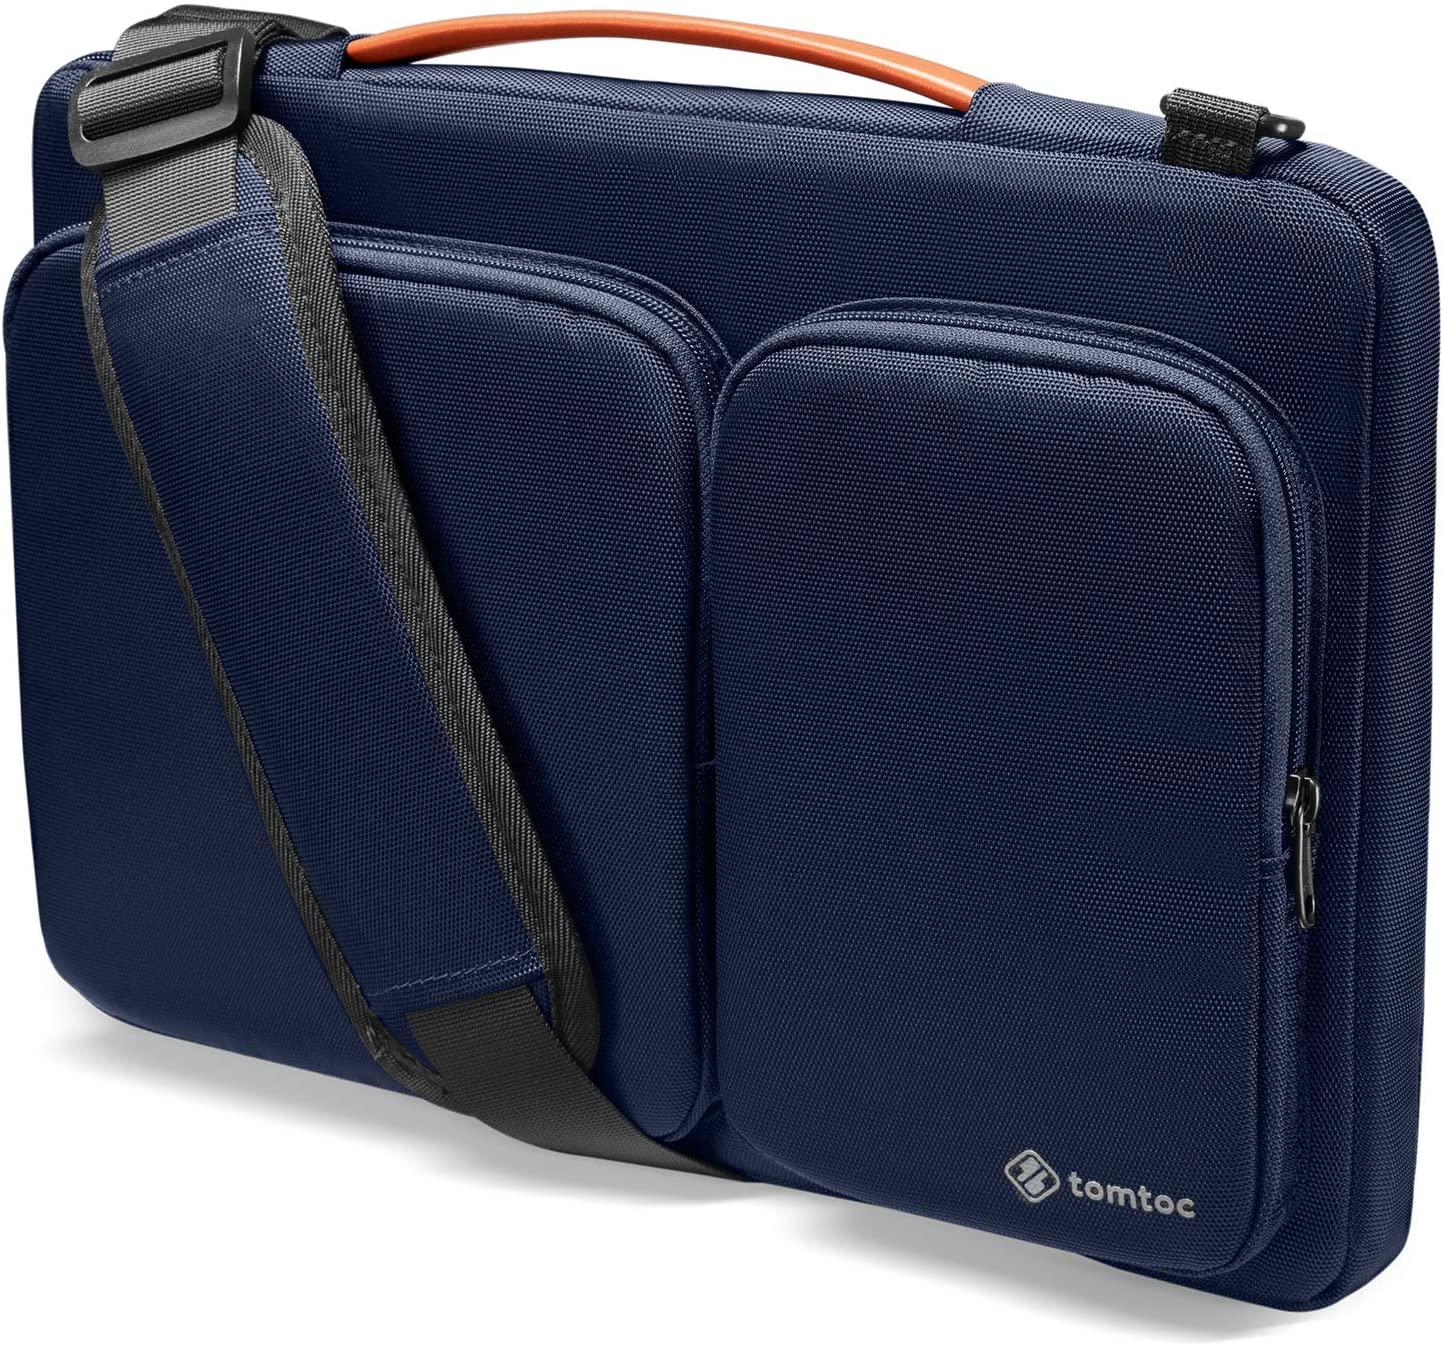 Tomtoc 360 protective laptop shoulder bag 